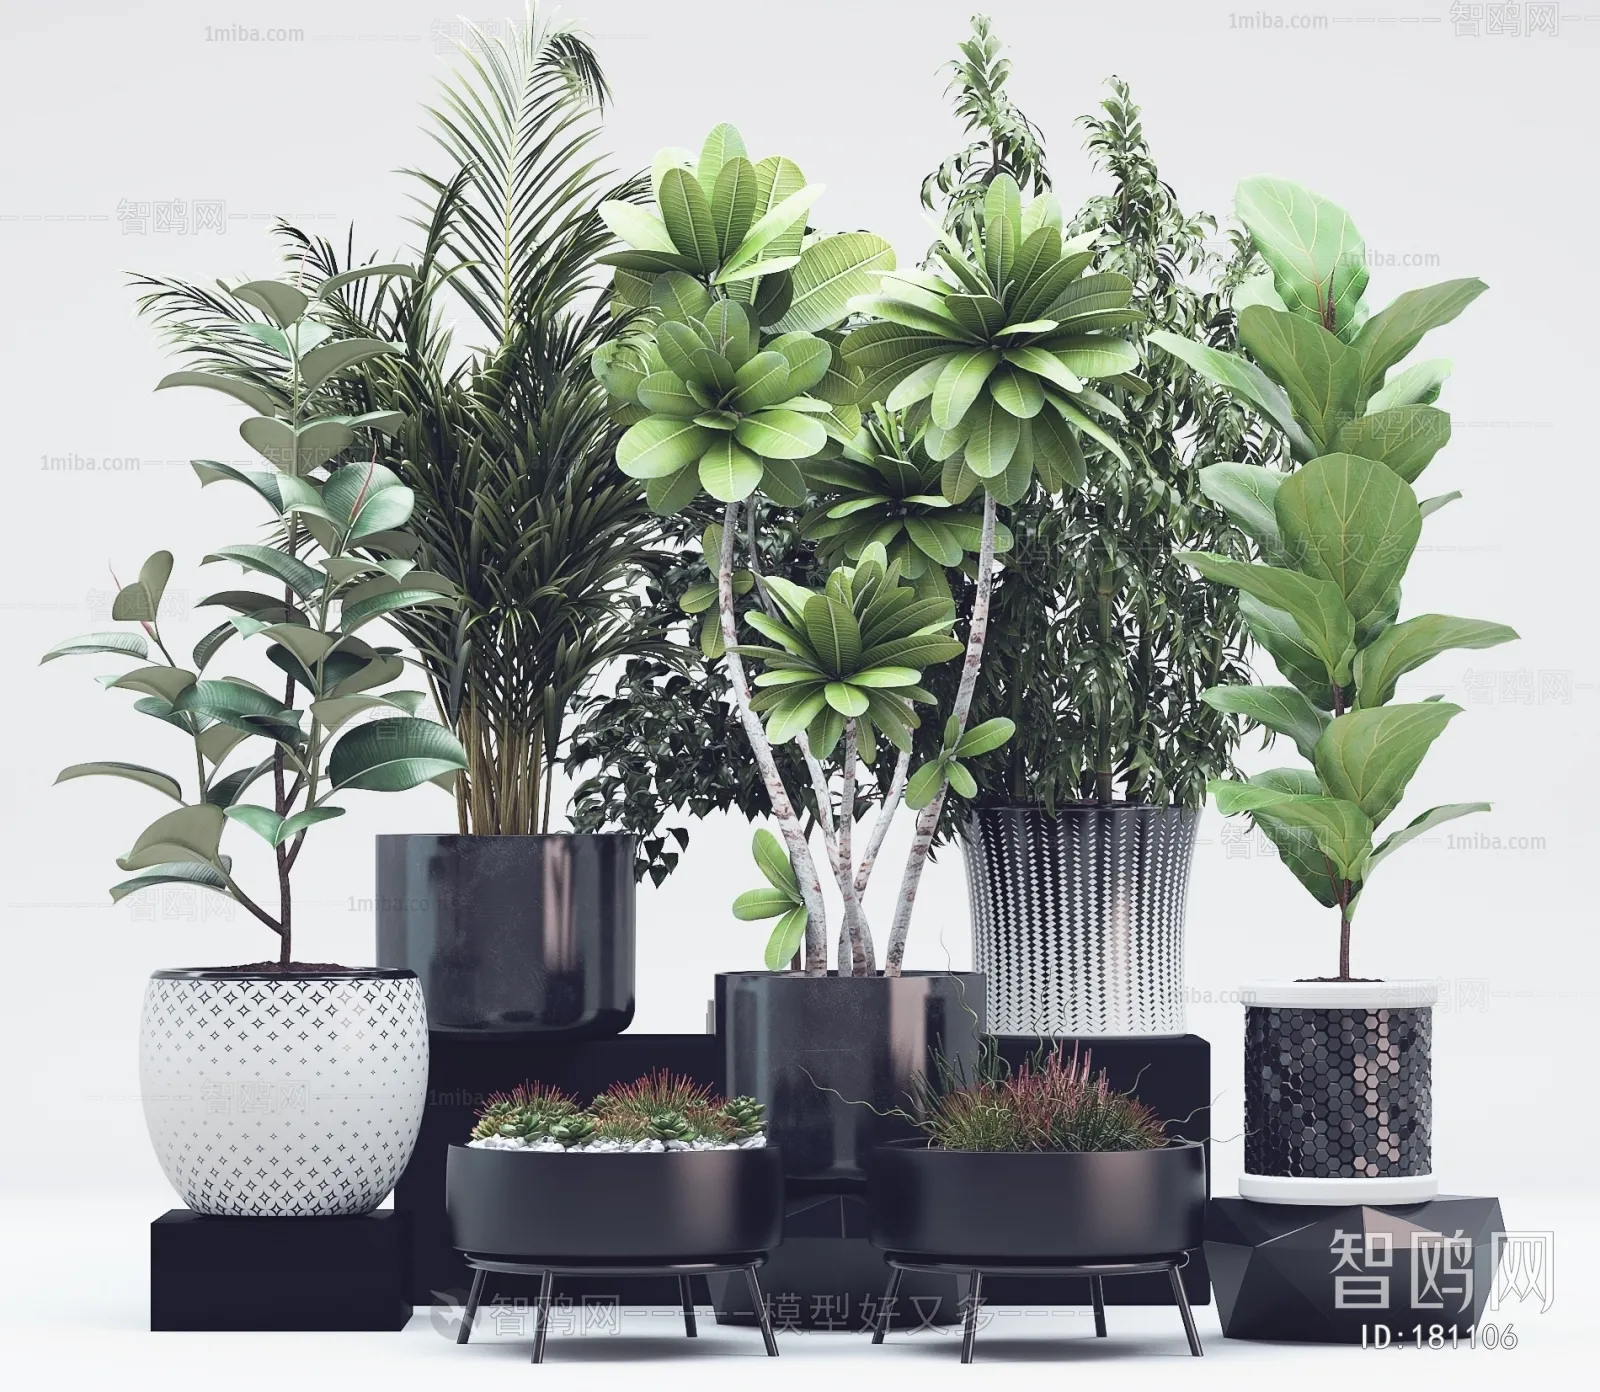 PLANT 3D MODELS – 003